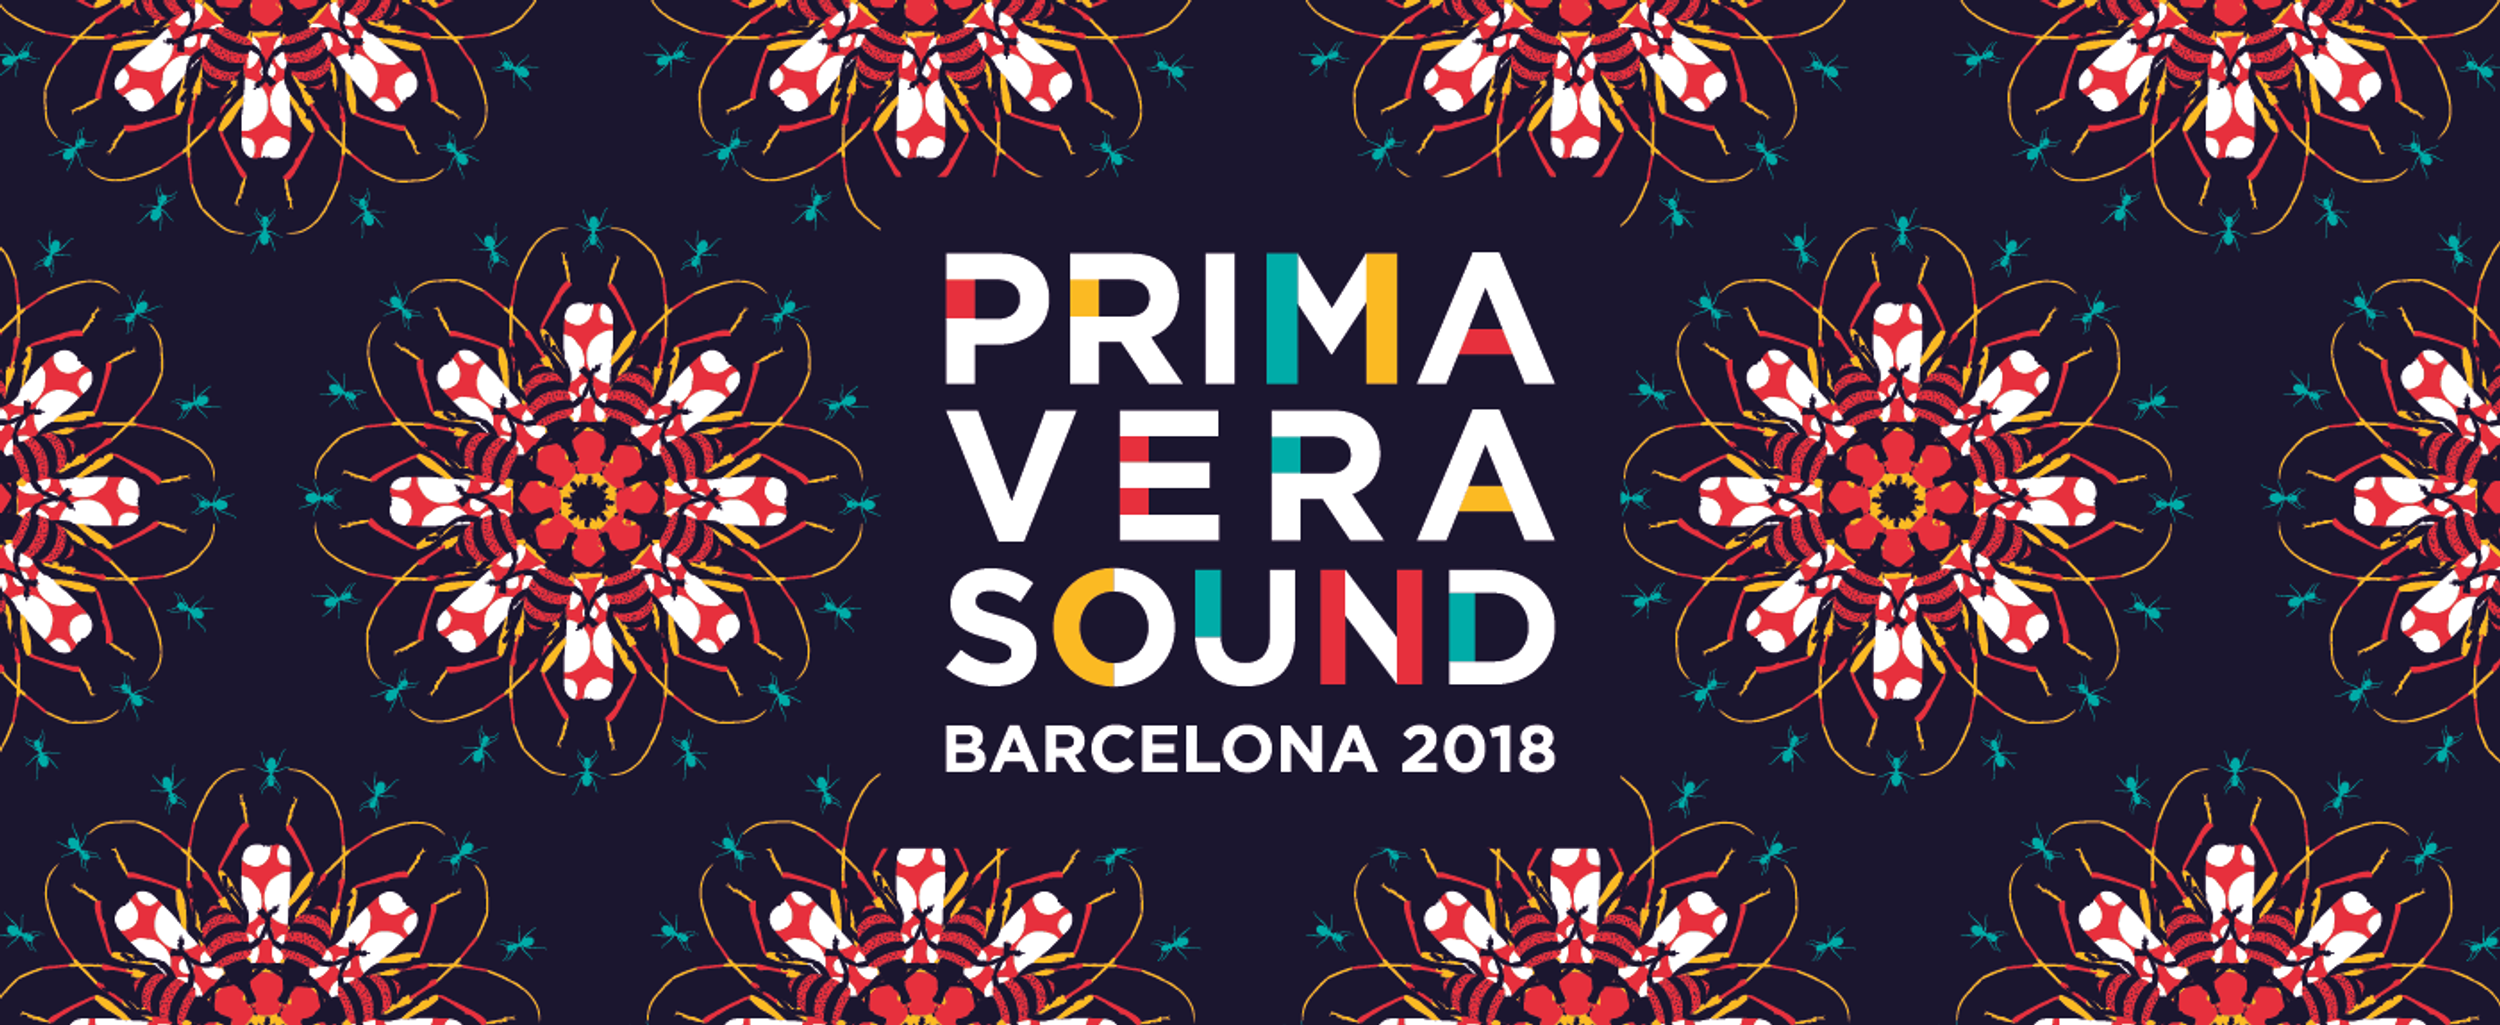 The Anticipation for Prima Vera Sound 2018